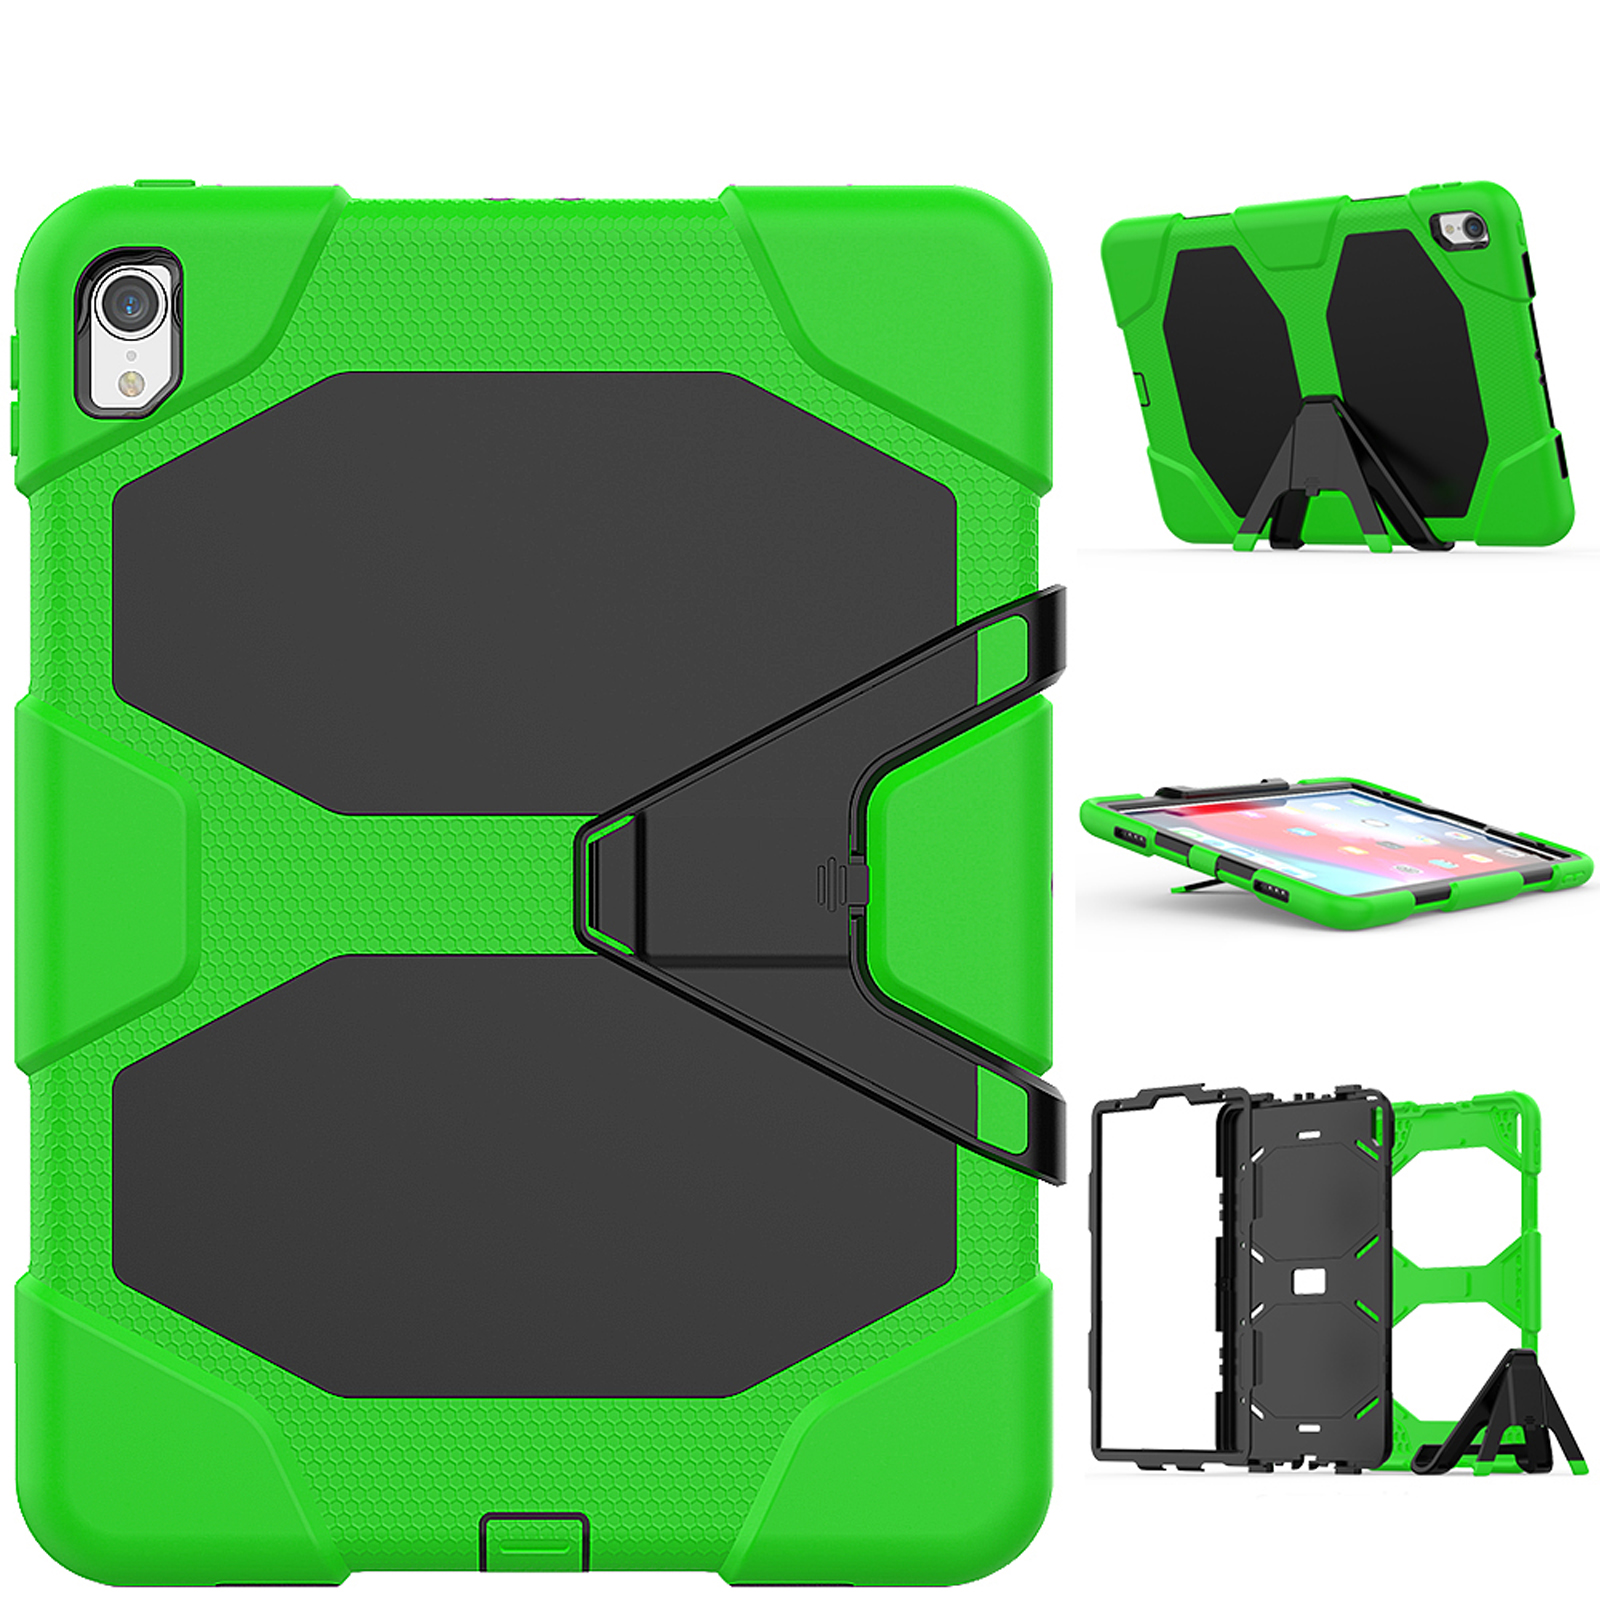 Pro 11 Kunststoff, (2018) Zoll für LOBWERK + Set iPad 3in1 Apple Standfunktion) Grün Bookcover 11 Case Folie + (Schutzhülle